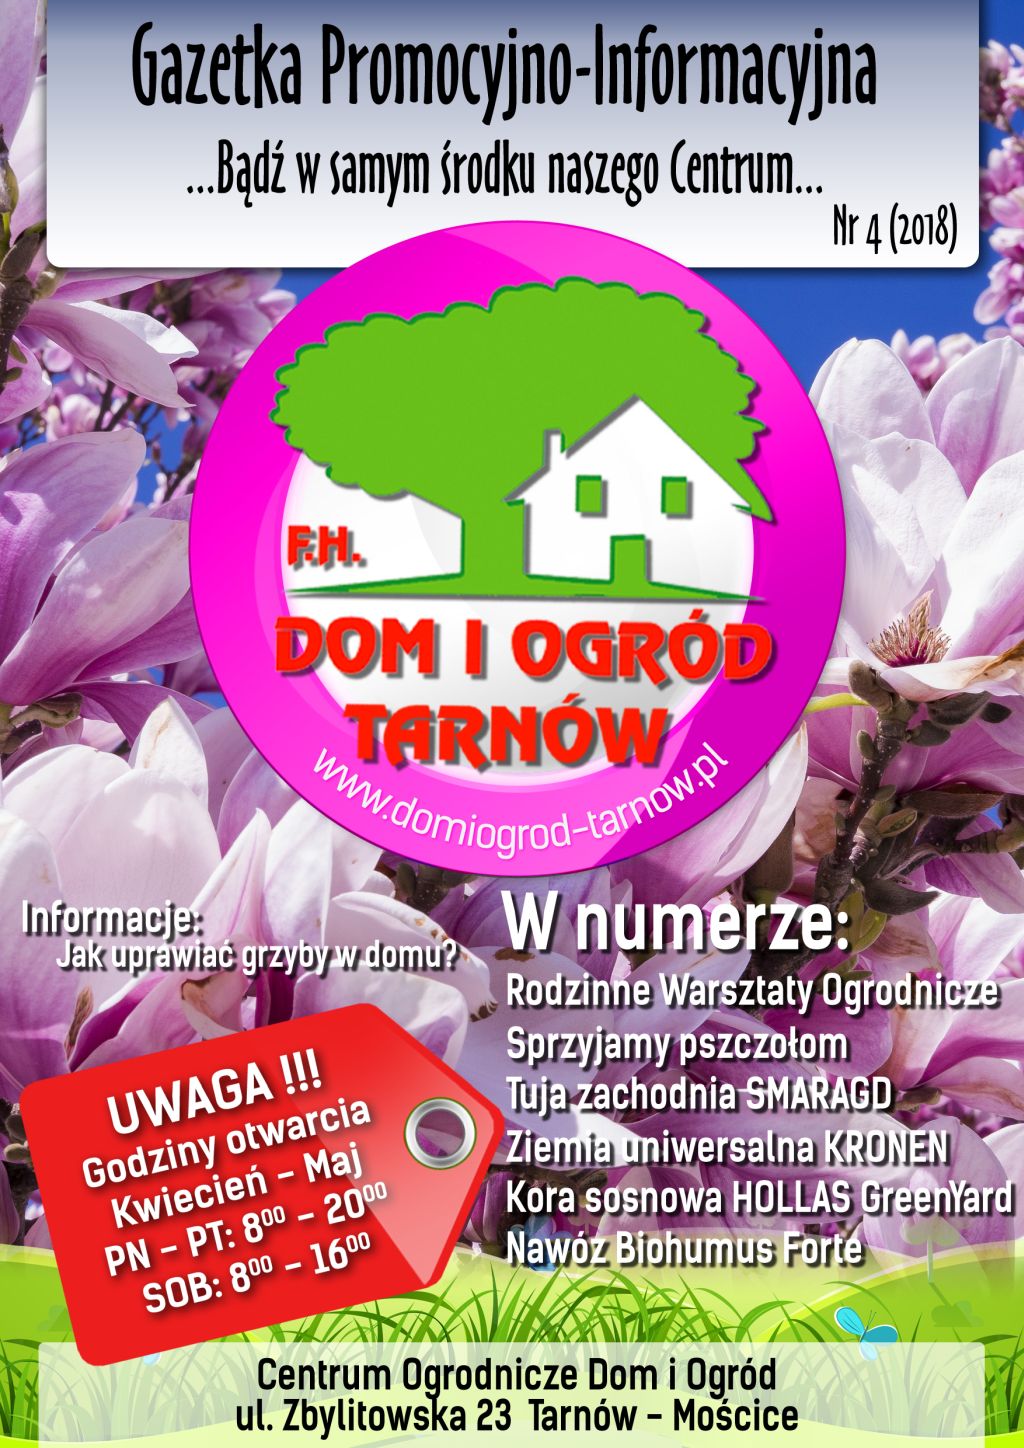 Gazetka Promocyjno-Informacyjna - 4/2018